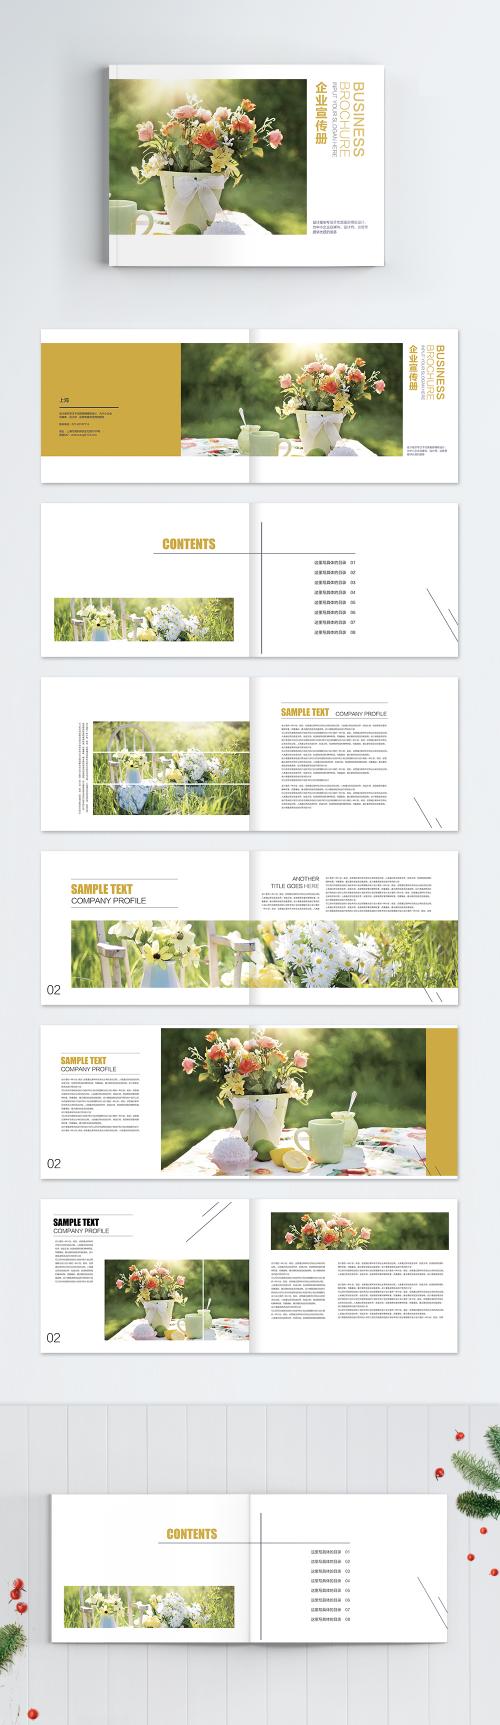 LovePik - brochure of small fresh day flower enterprise - 400161517